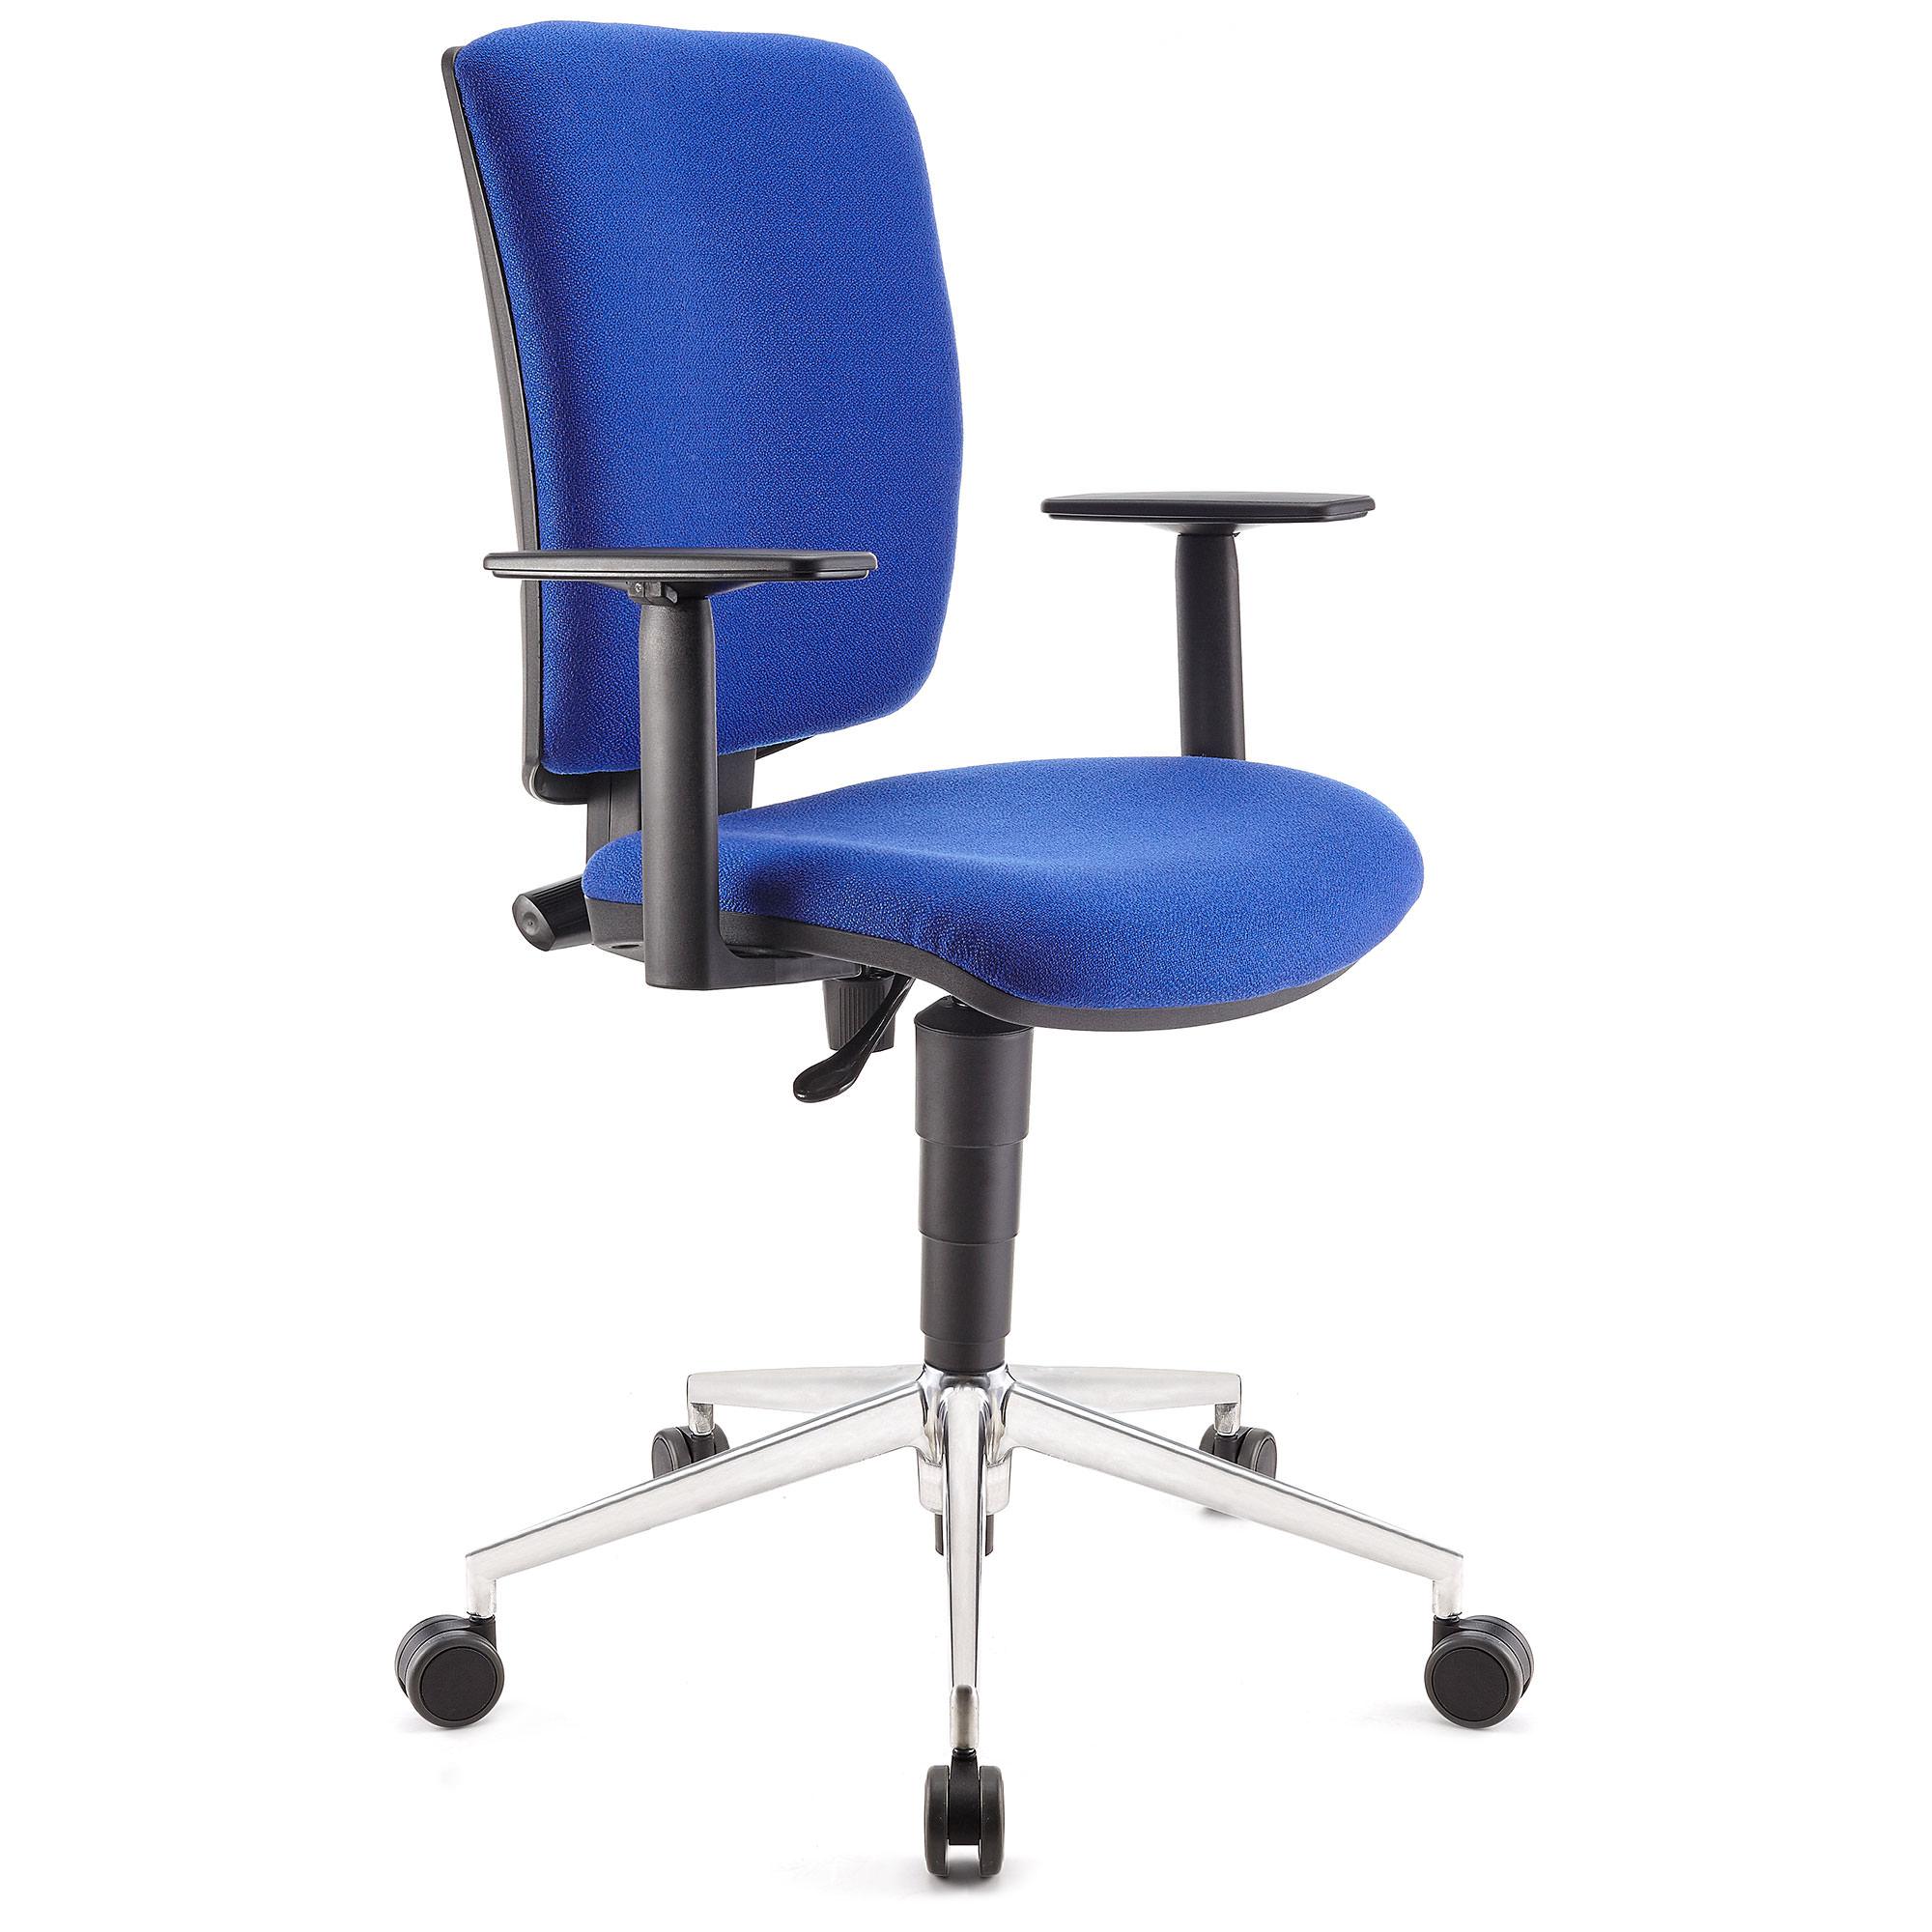 Bürostuhl ATLAS PRO STOFF, verstellbare Rücken- und Armlehnen, Metallfußkreuz, Farbe Blau